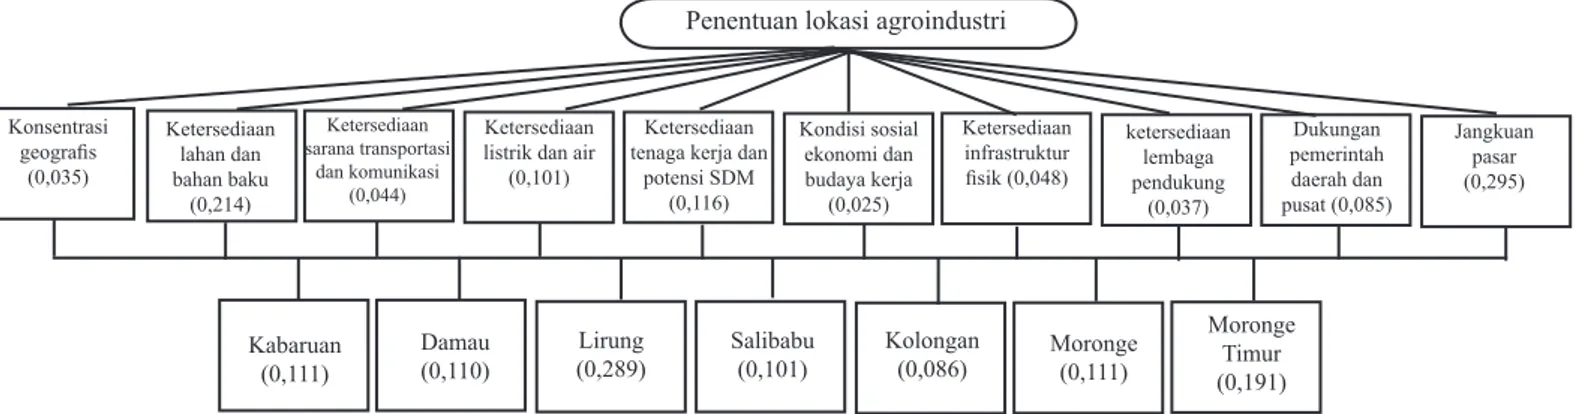 Gambar 3. Struktur hierarki dan bobot prioritas penentuan lokasi industriKondisi sosial ekonomi dan budaya kerja(0,025) Moronge Timur(0,191)